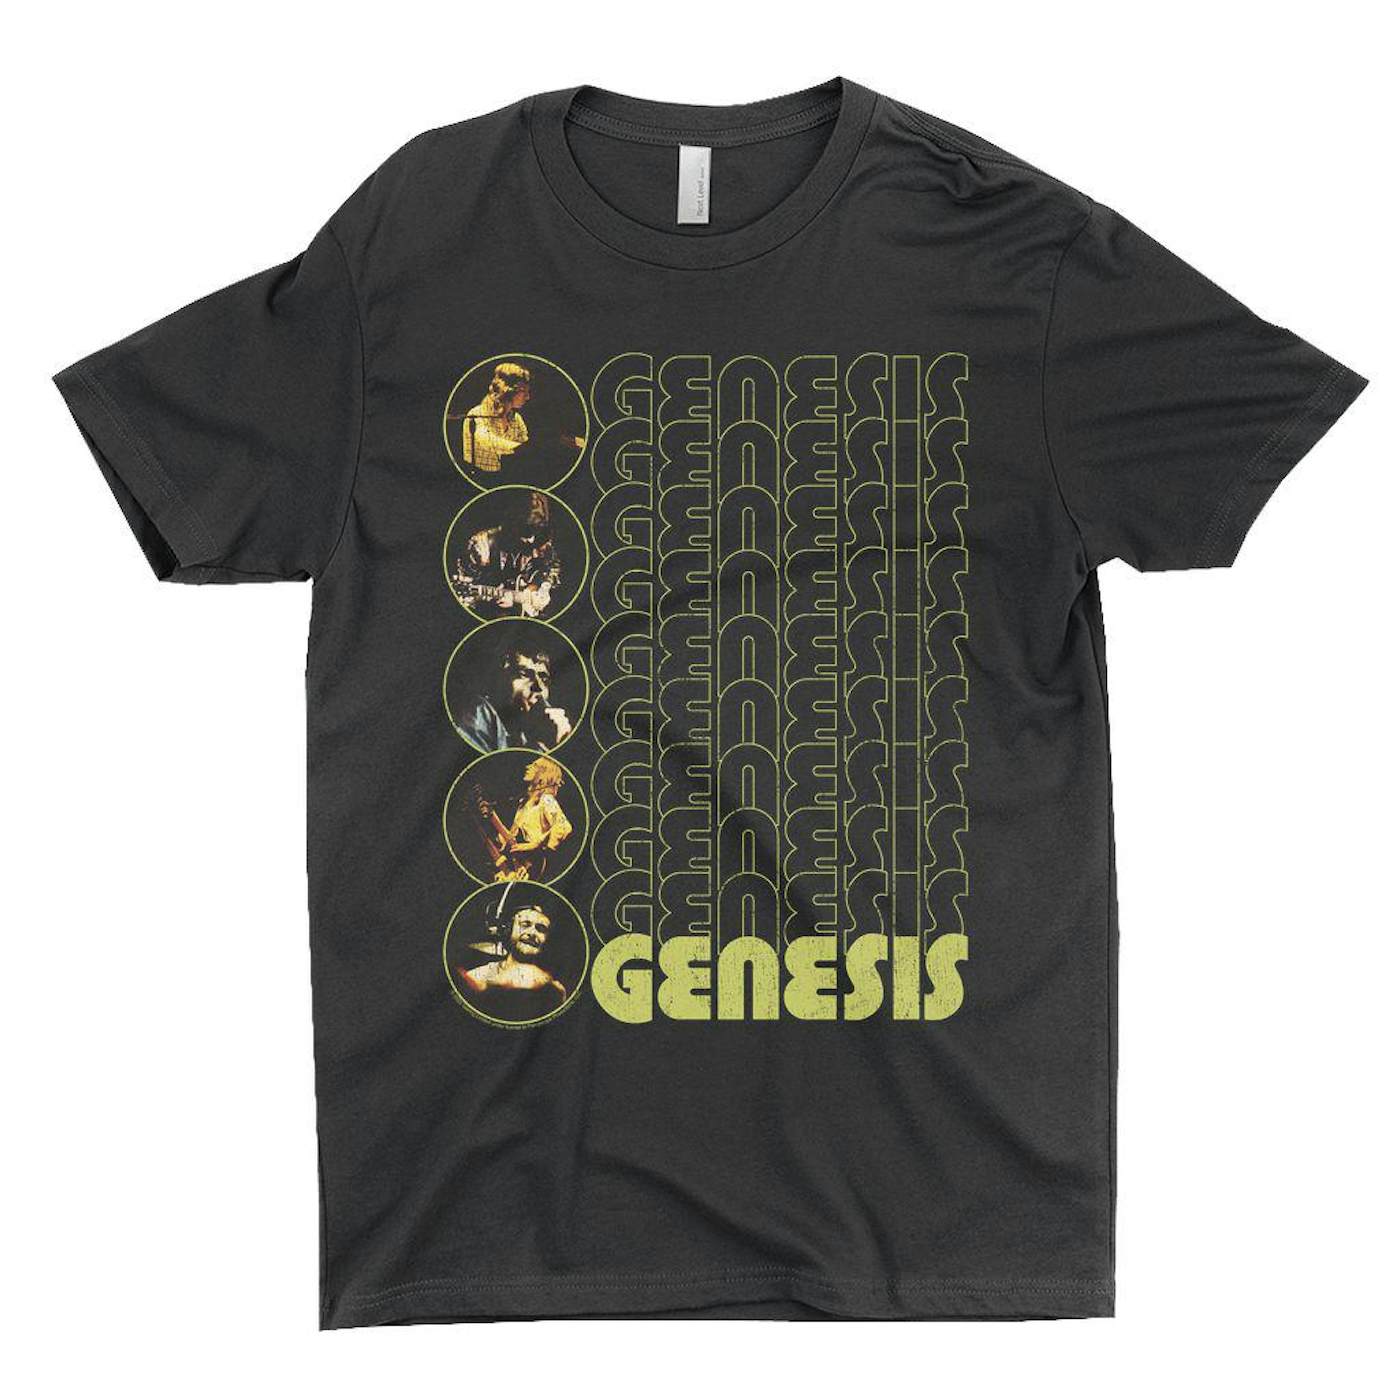 Genesis T-Shirt | The Carpet Crawlers Album Design Distressed Genesis Shirt